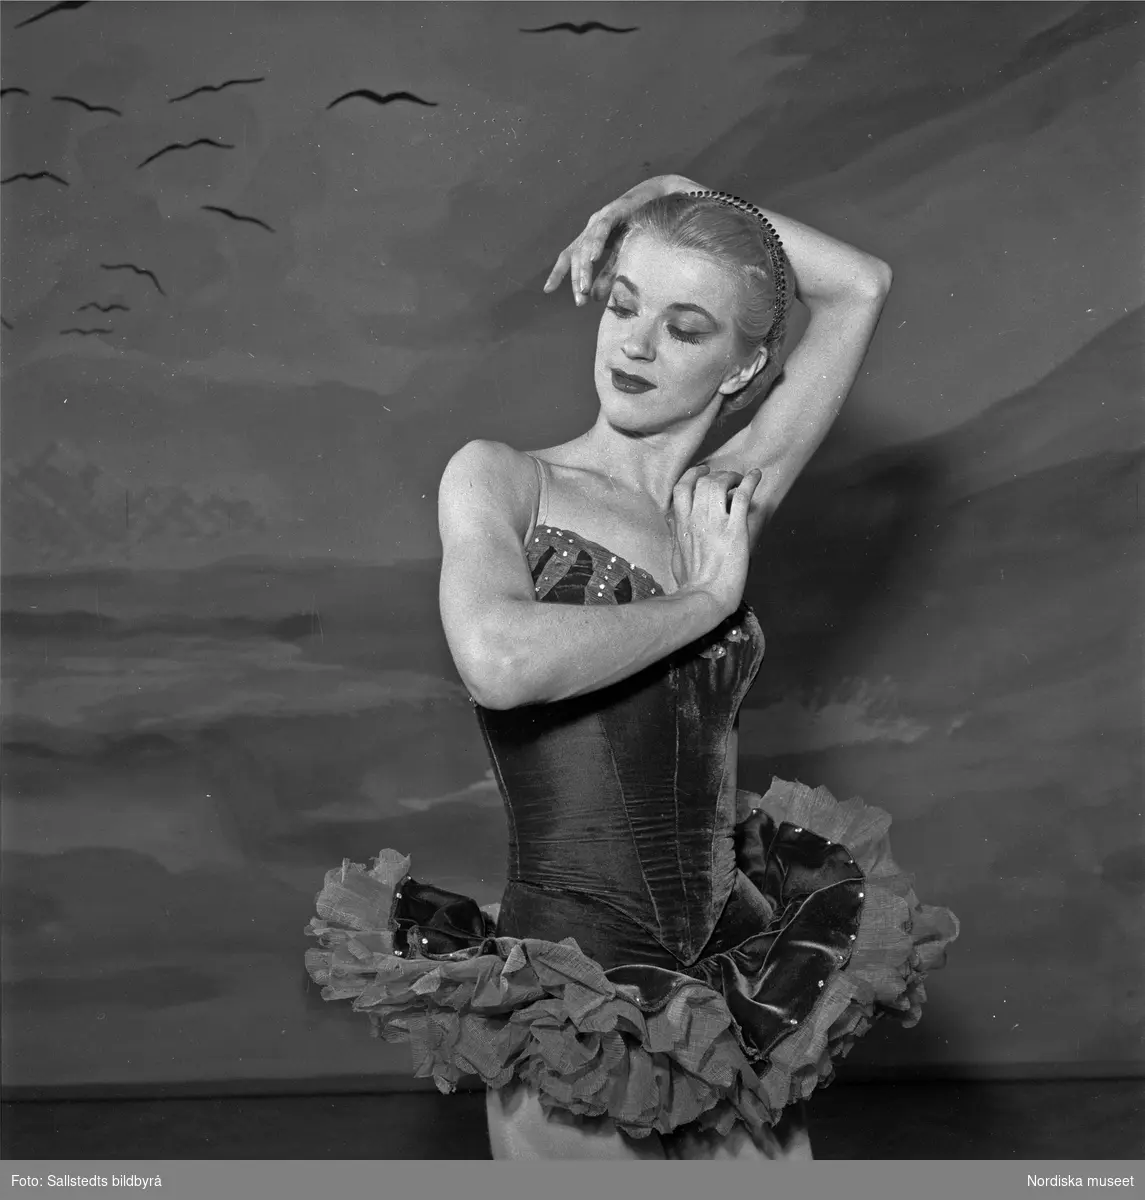 Dansaren Elsa-Marianne von Rosen i en uppsättning av Birgit Cullberg, på Södra Teatern, Riksteatern, februari 1950. Scenografin är ett hav med fåglar på himlen.